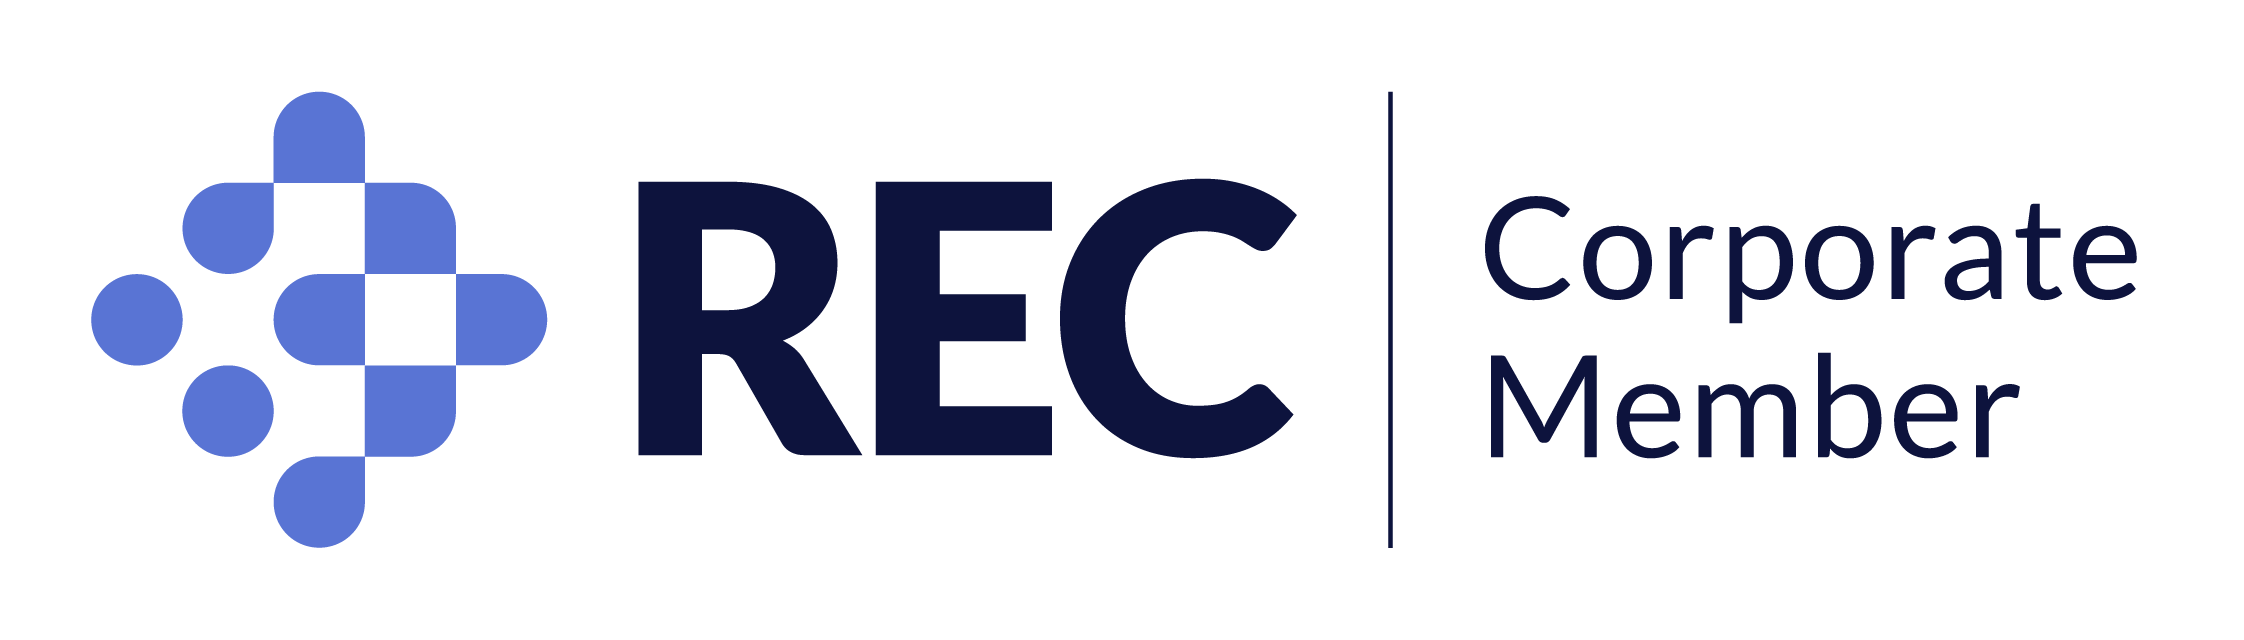 Merritt Recruitment - REC Corporate Members